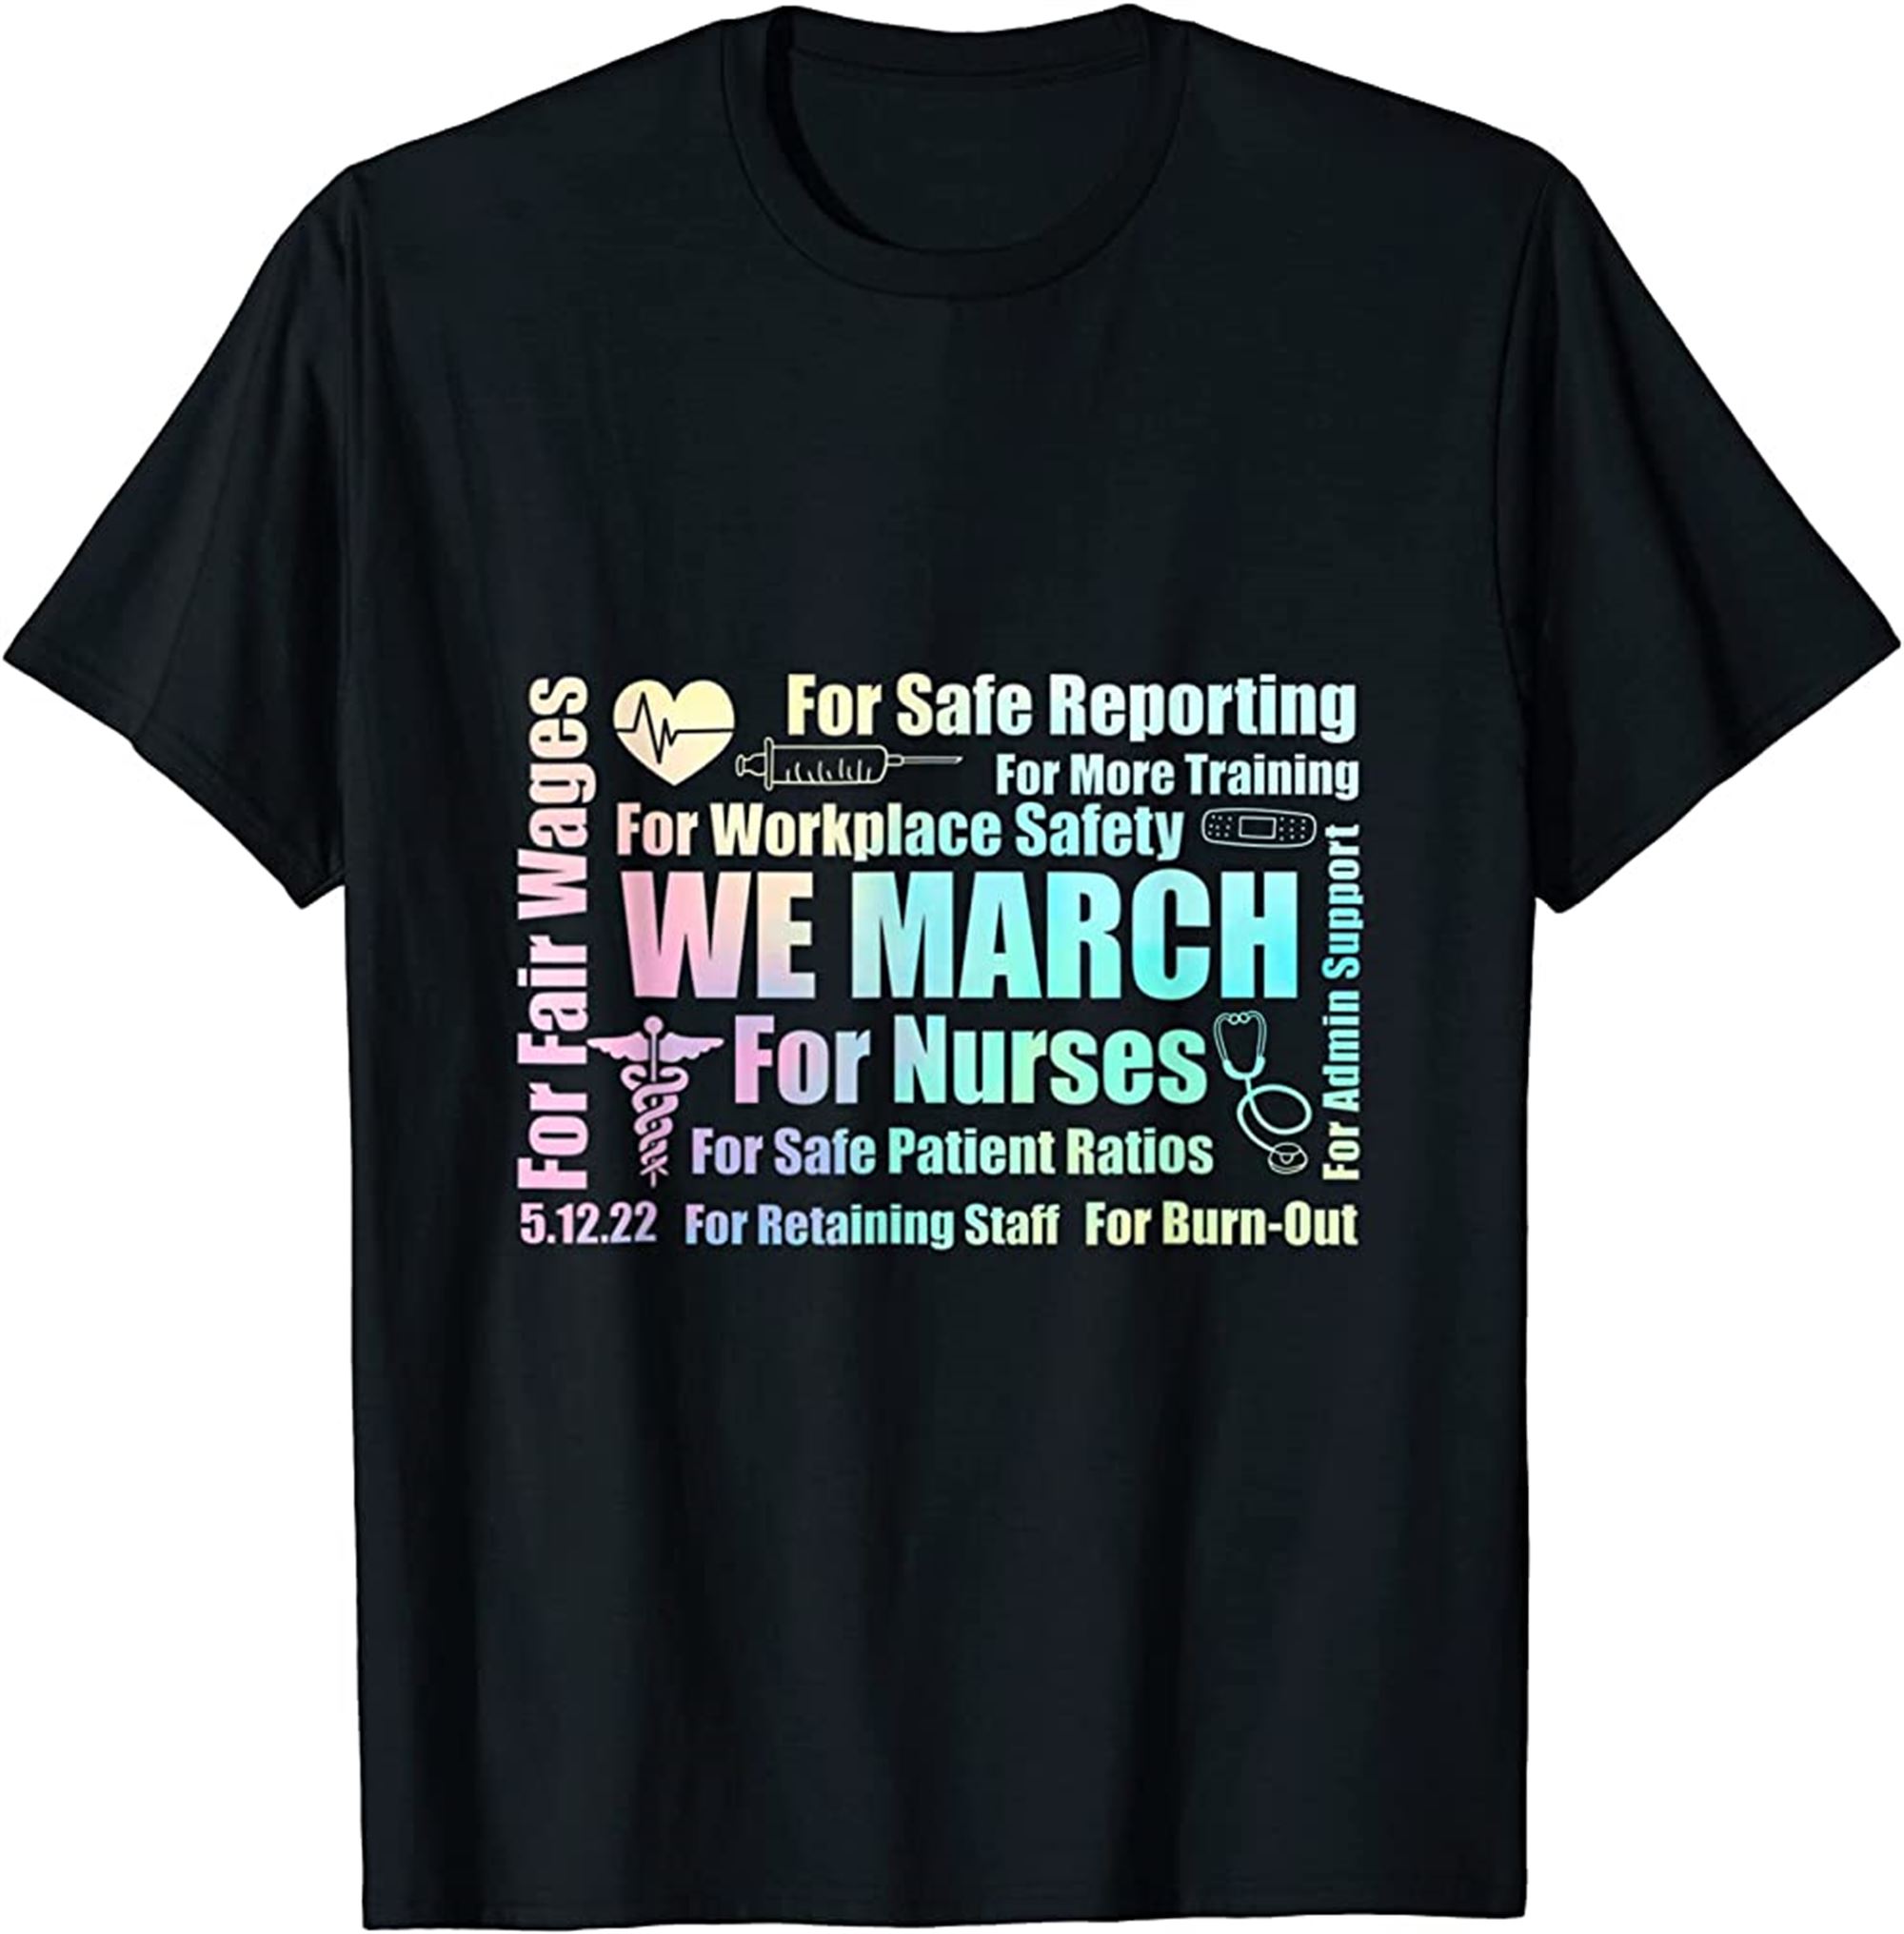 We March For Nurses Million Nurse March Women Power Nurse T-shirt Plus Size Up To 5xl